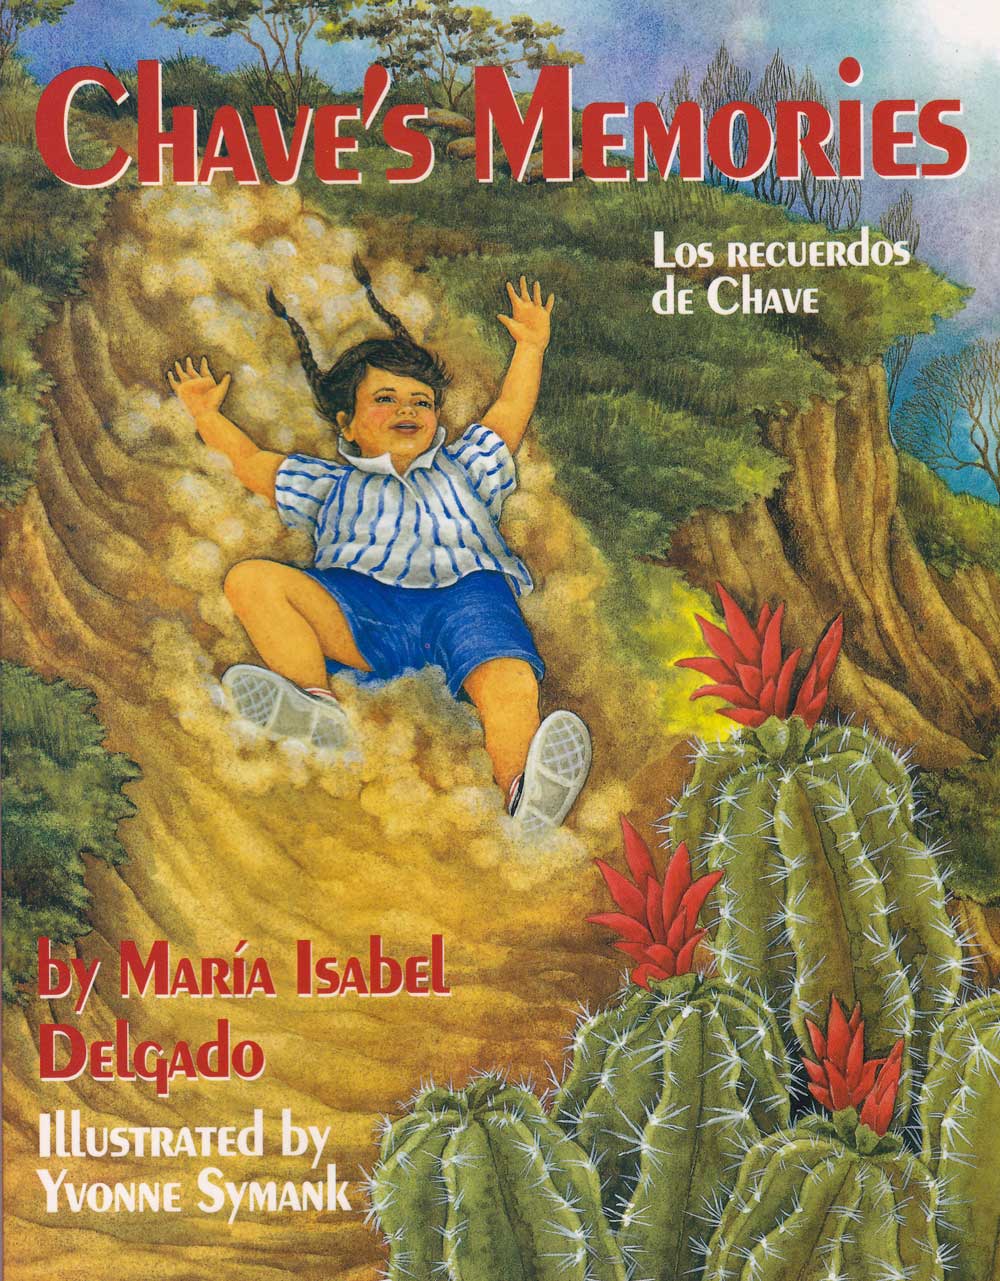 Los recuerdos de Chave - Chaves Memories, Del Sol Books